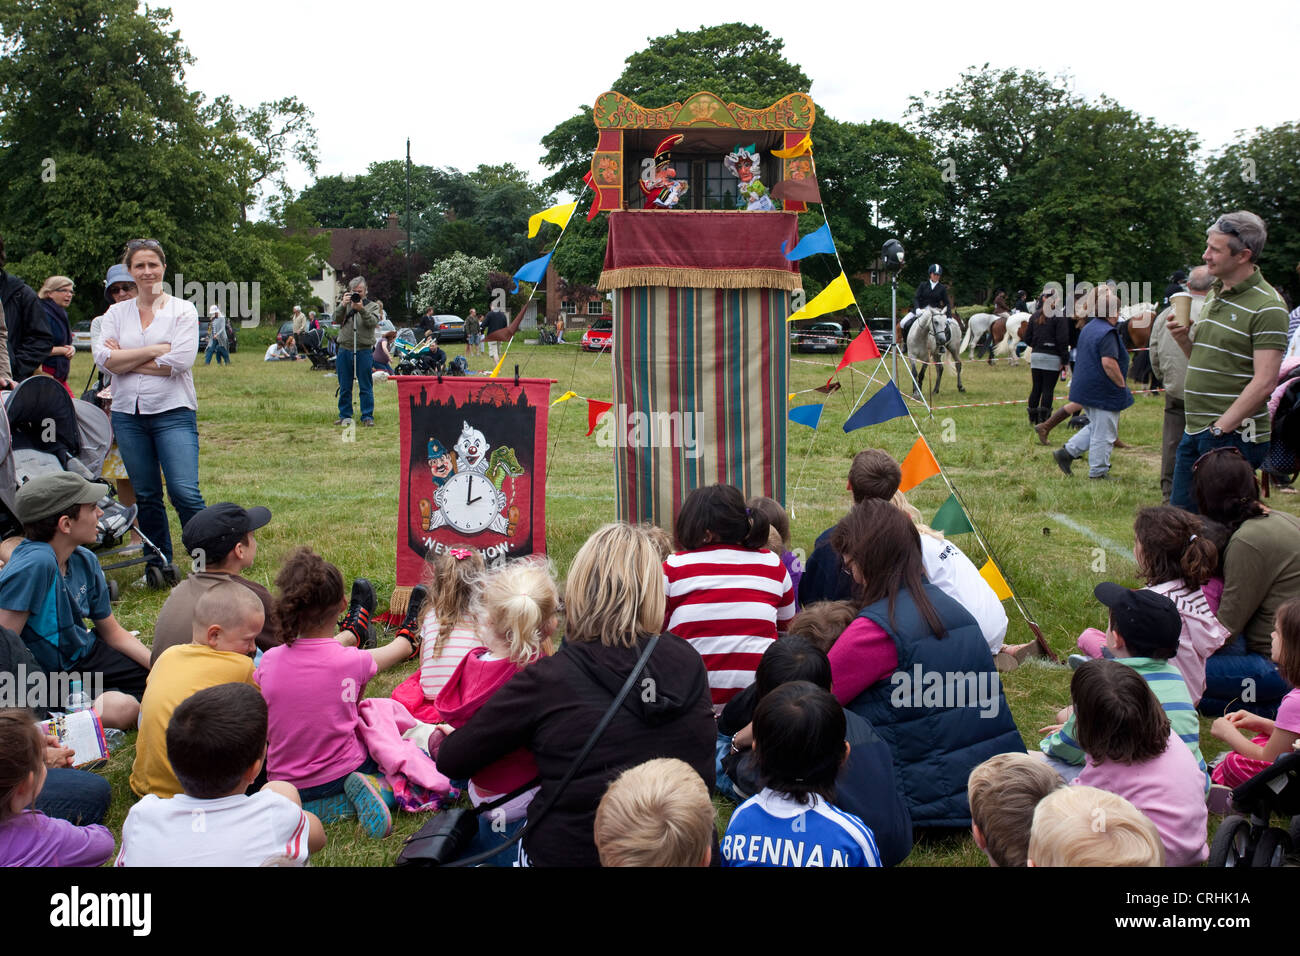 Punch & Judy puppet show at summer fair. Stock Photo